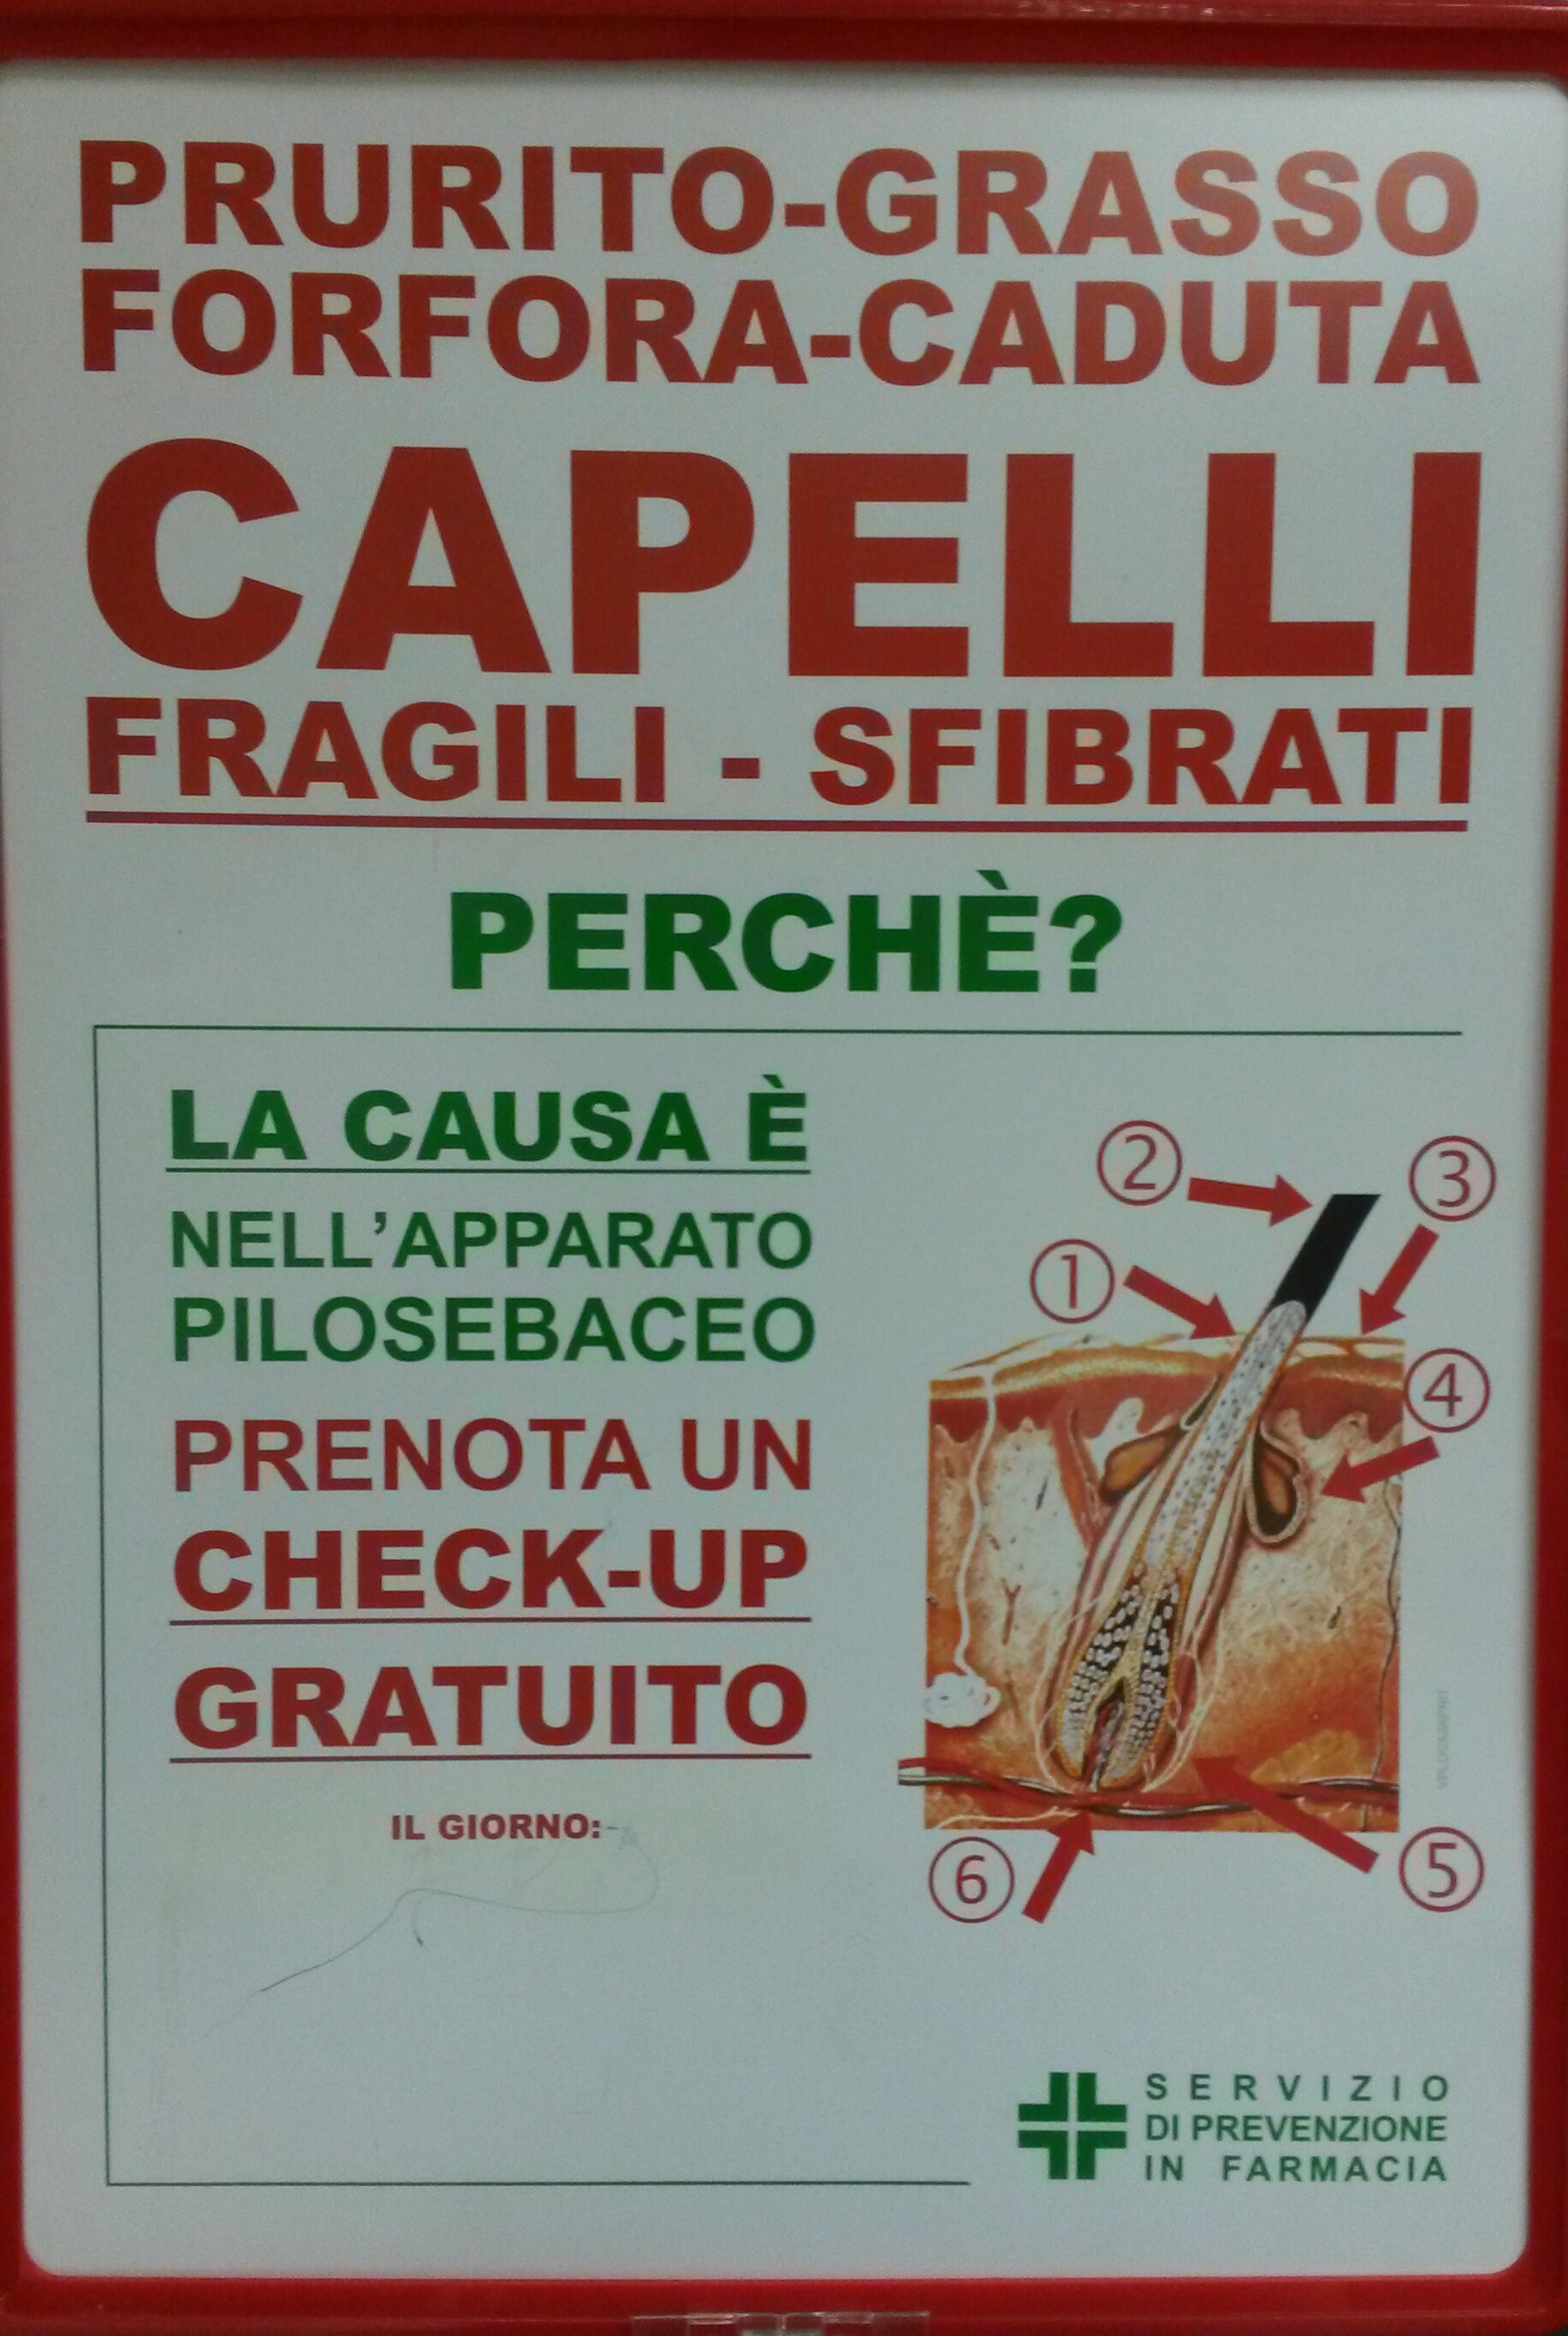 Check-up Capelli